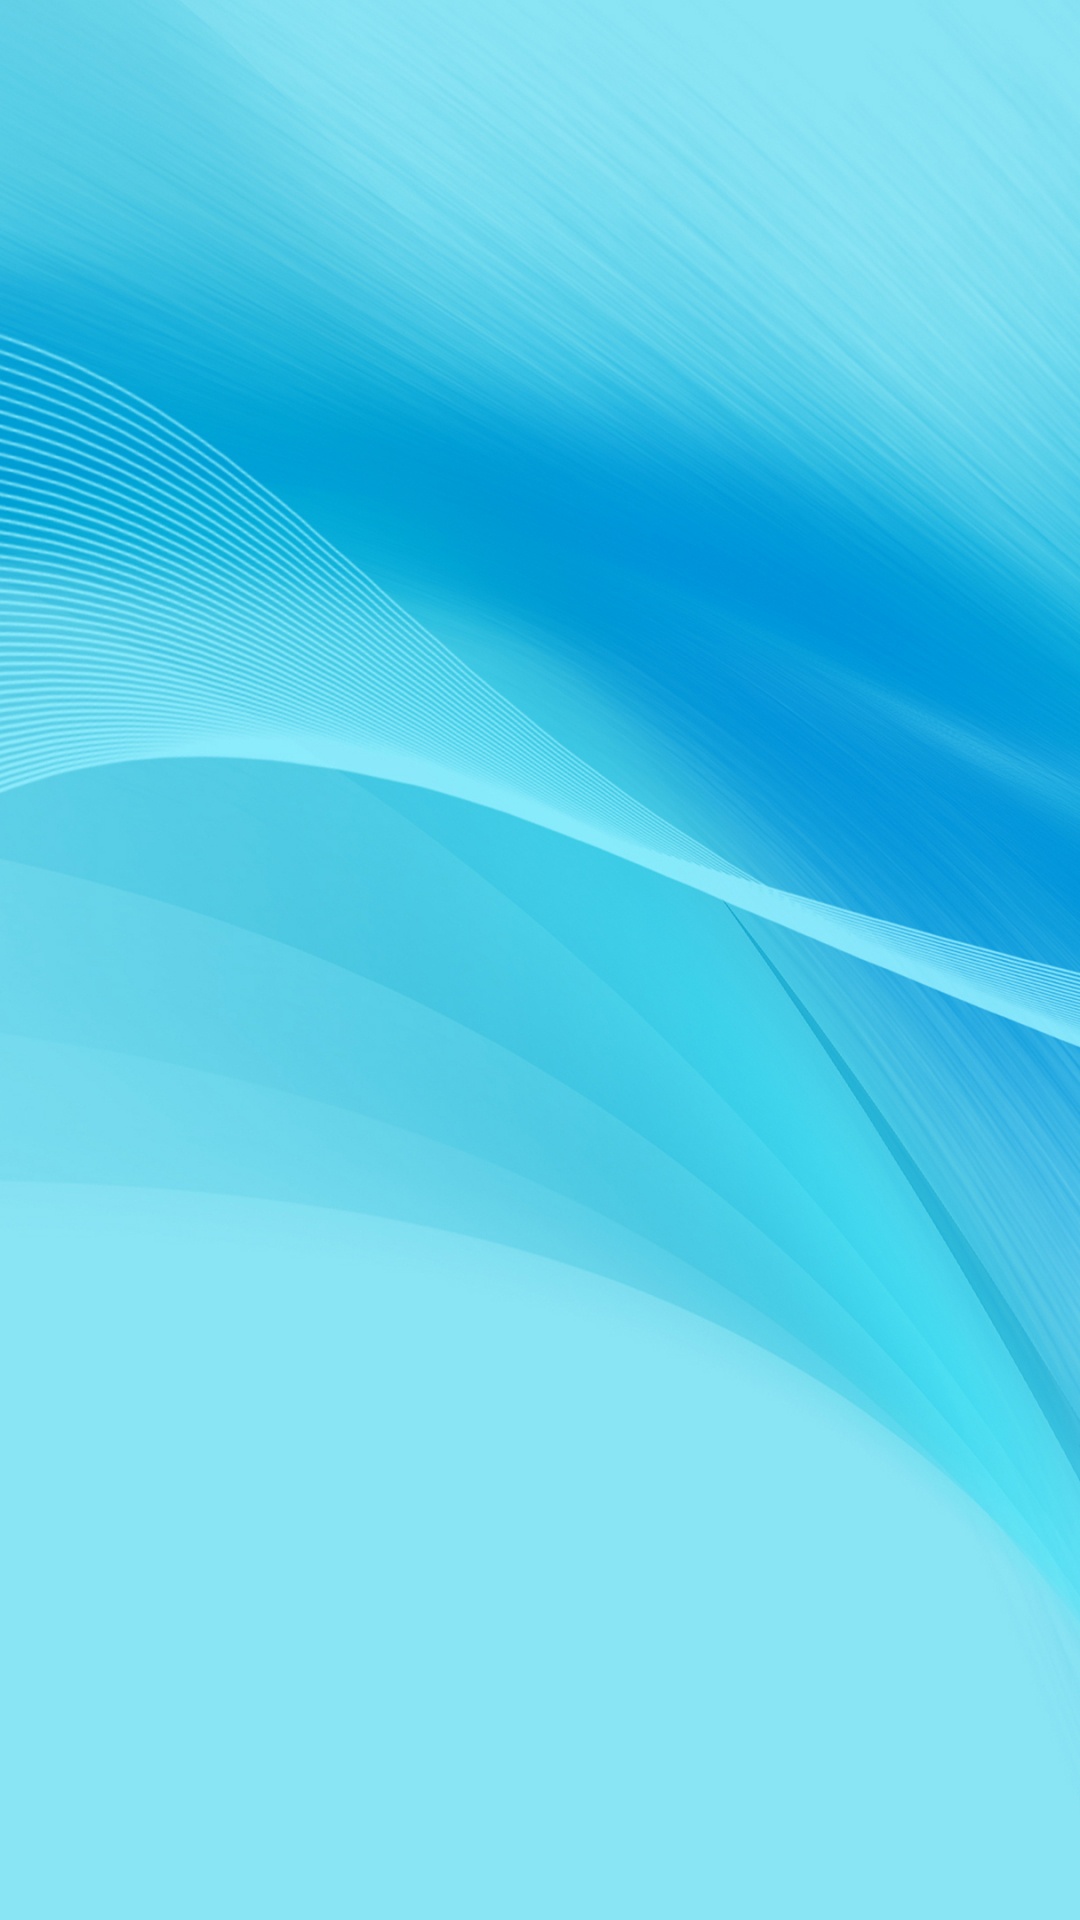 Huawei, Huawei Nova, Huawei Nova 2, Azul, Aqua. Wallpaper in 1080x1920 Resolution